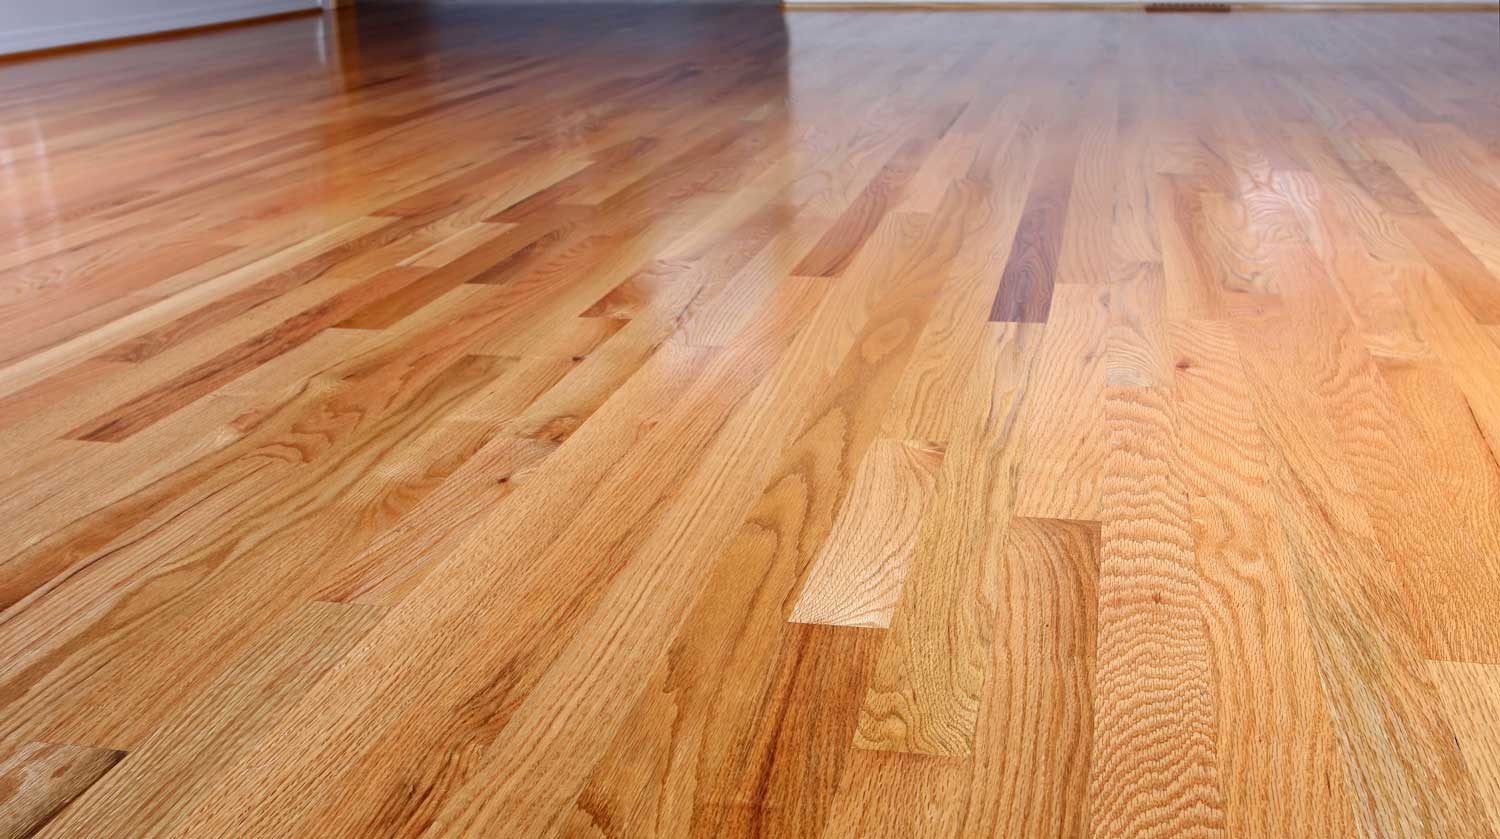 Newly refinished hardwood floor